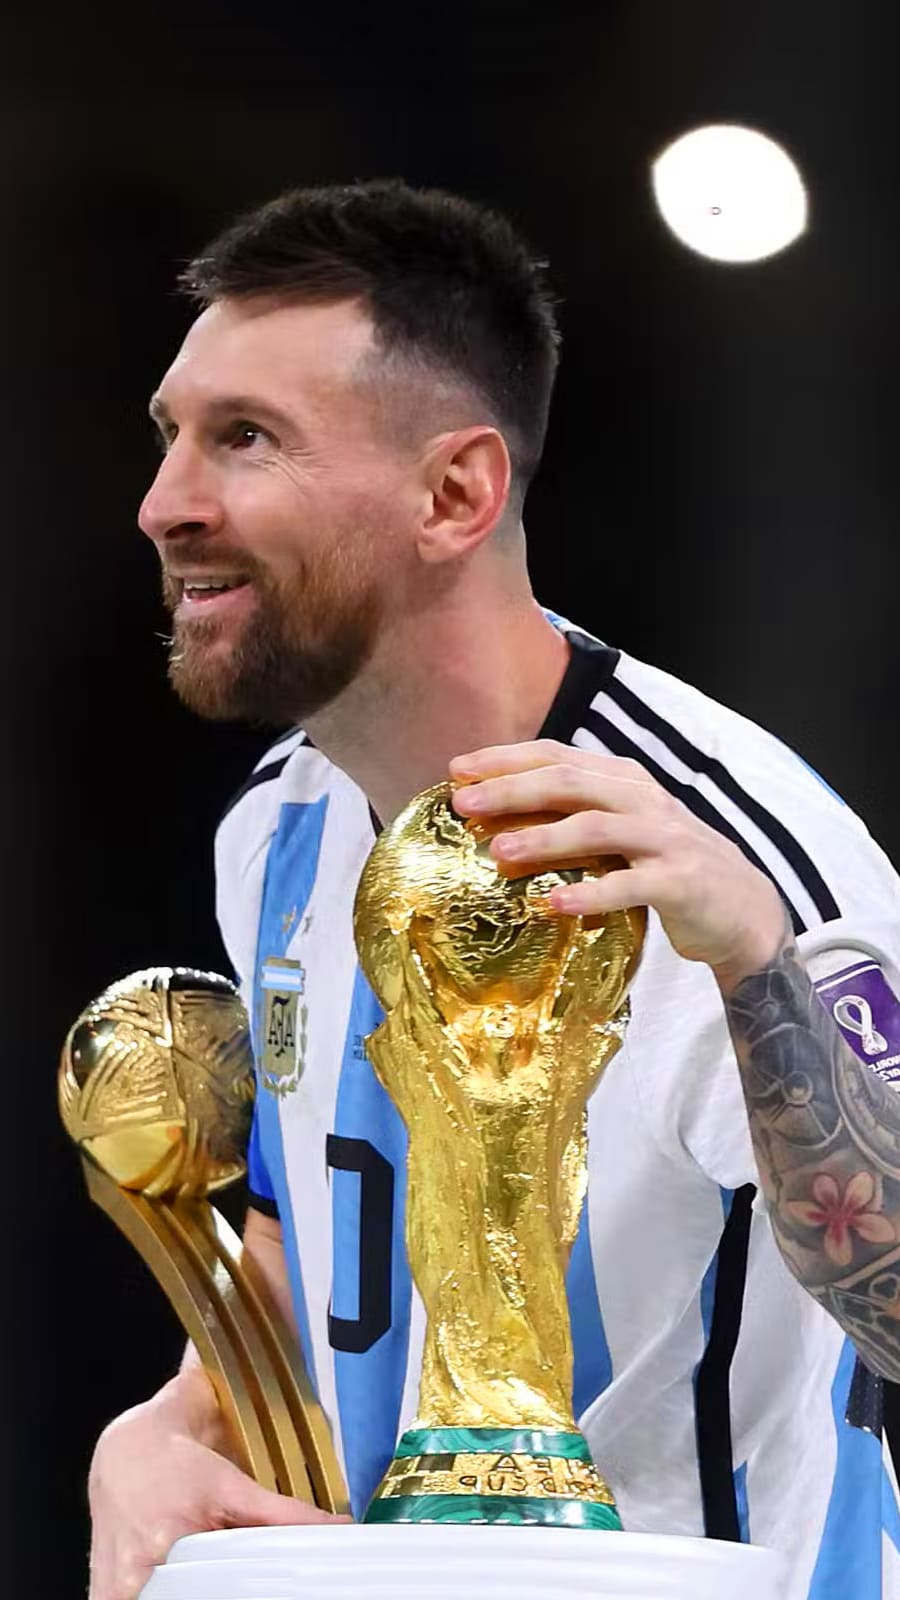 Bức ảnh Messi World Cup Trophy Wallpaper là sự lựa chọn hoàn hảo cho những người yêu bóng đá và Messi. Với hình ảnh chiếc cúp vàng cùng ngôi sao danh tiếng này, bạn sẽ có cảm giác như mình đã đứng trên đỉnh cao của bóng đá.